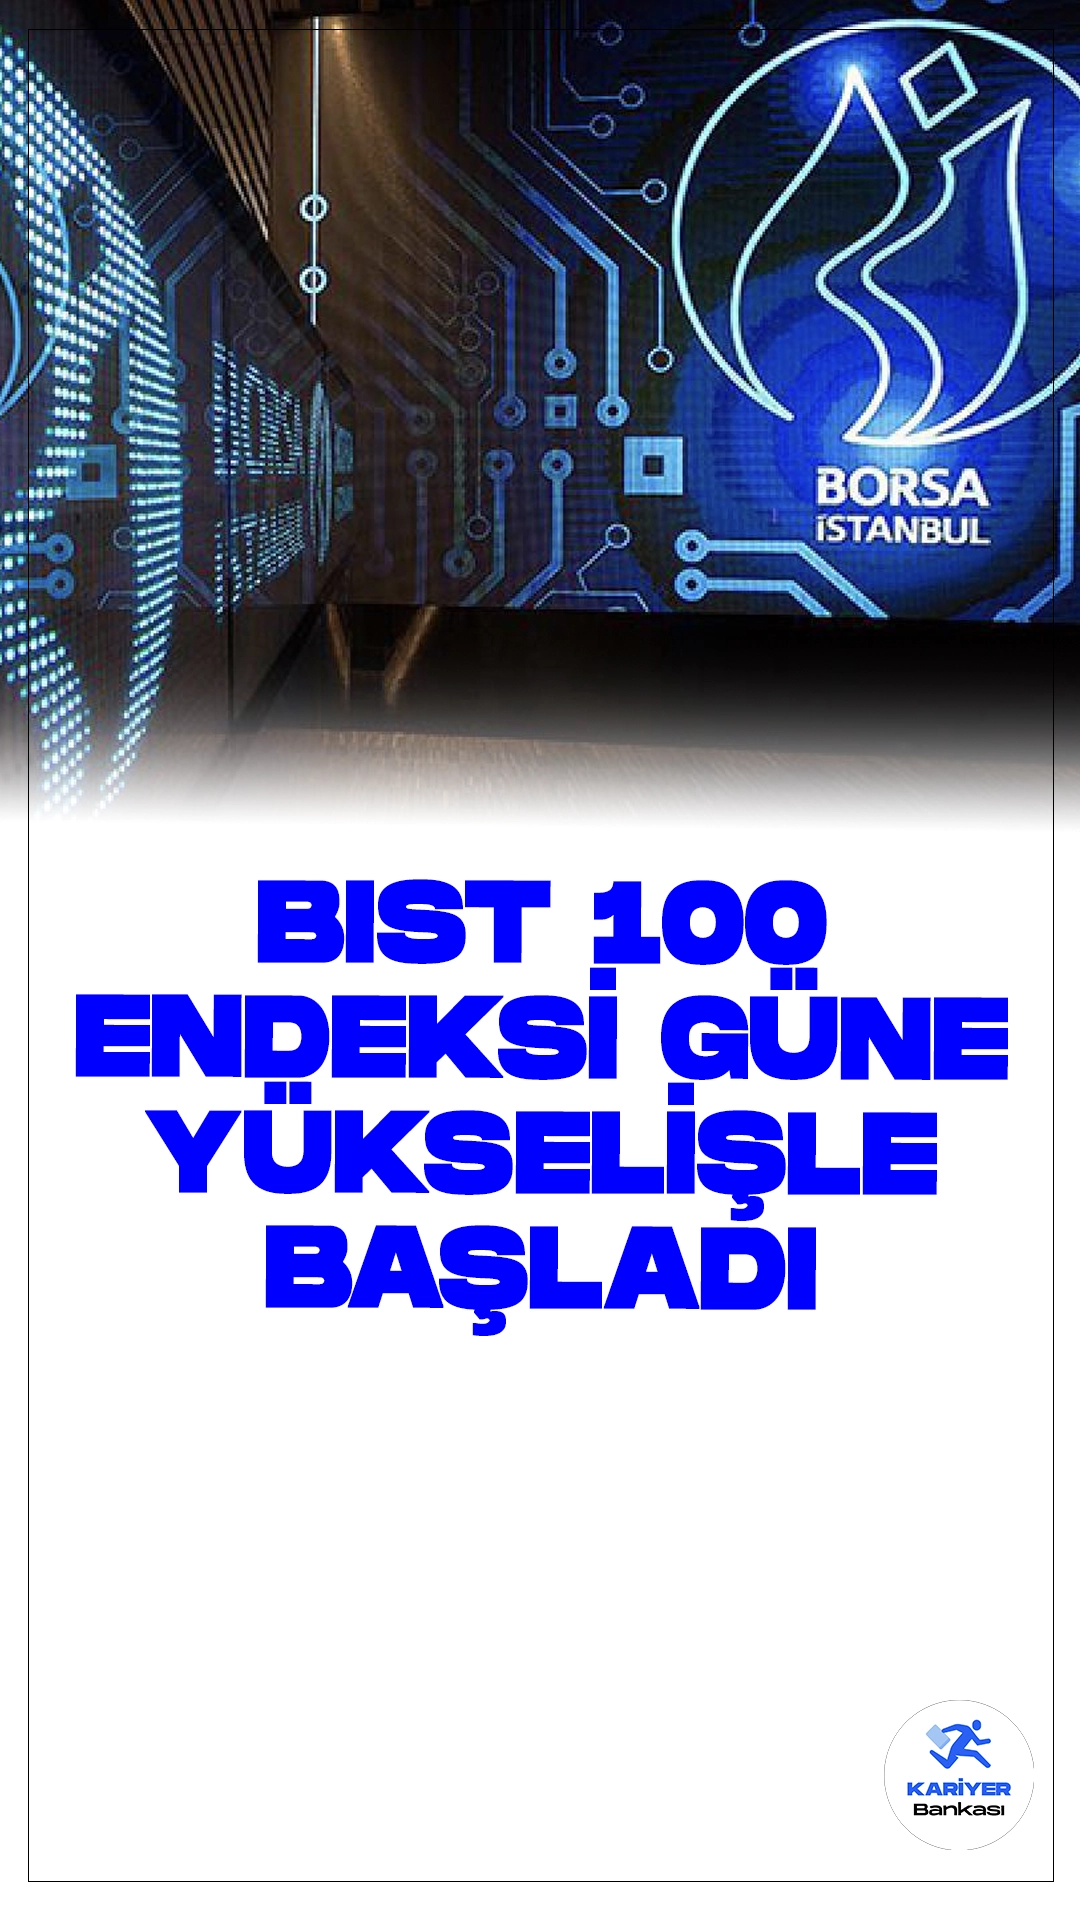 BIST 100 Endeksi Güne Yükselişle Başladı.Borsa İstanbul'da BIST 100 endeksi, güne yüzde 0,26 yükselişle 10.506,79 puandan başladı.